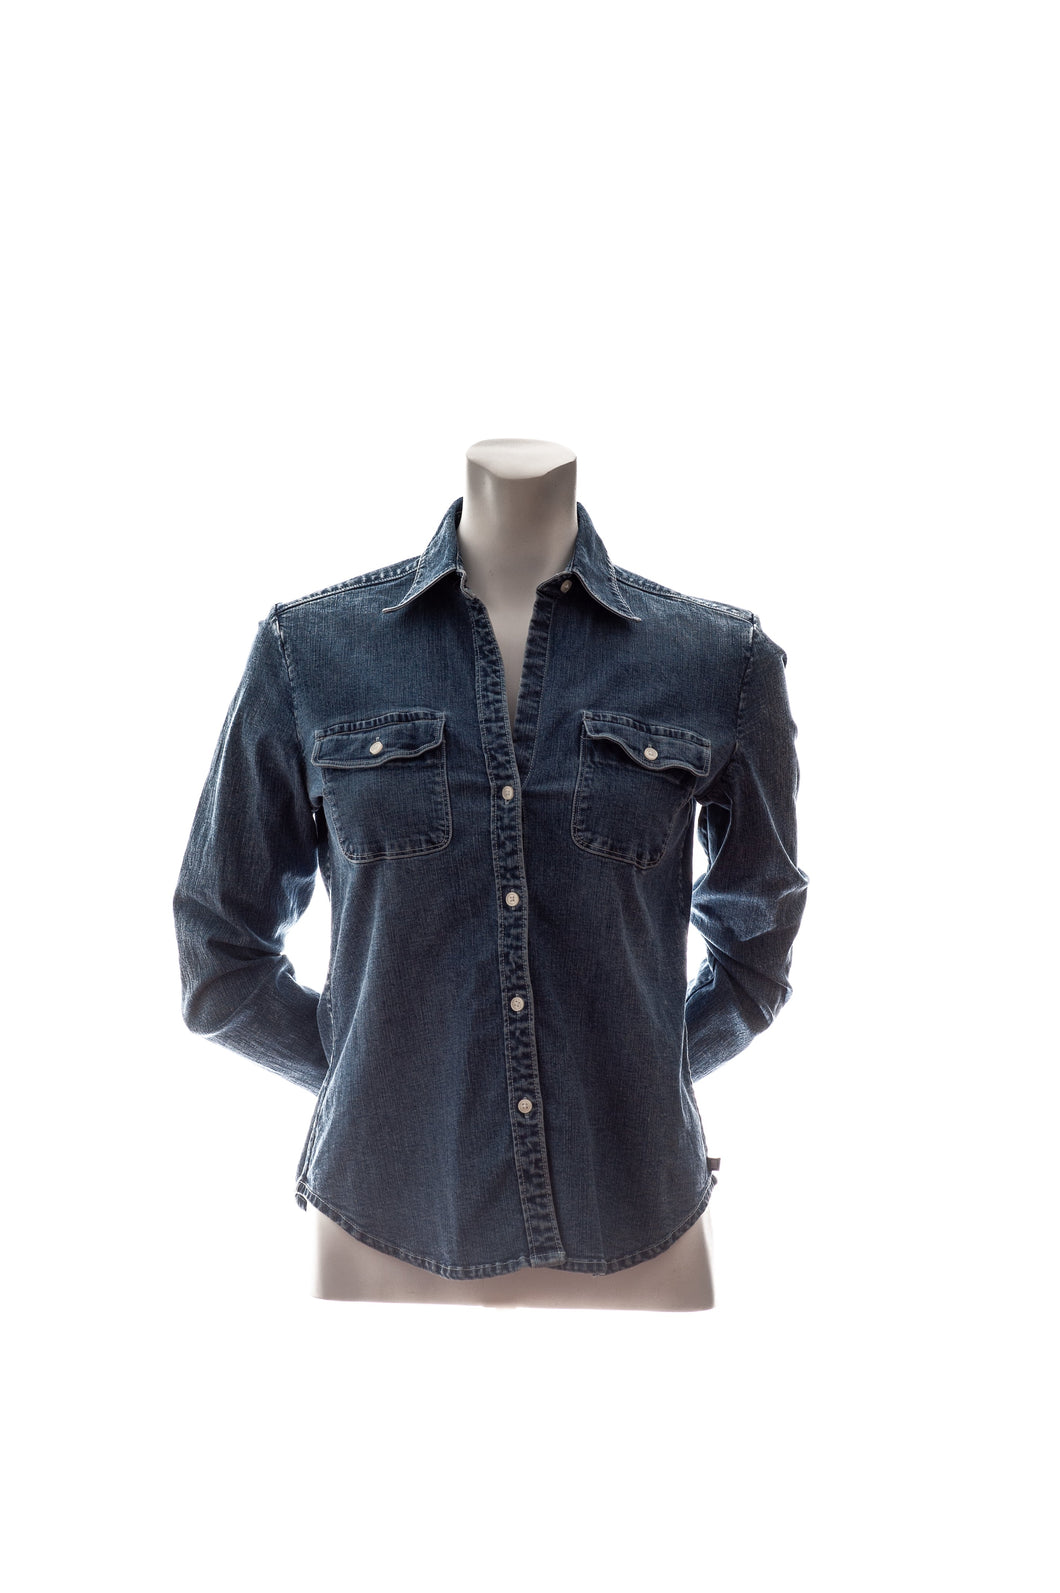 Ralph Lauren Jeans Co. Denim Long Sleeve Button Up Shirt Womens Small